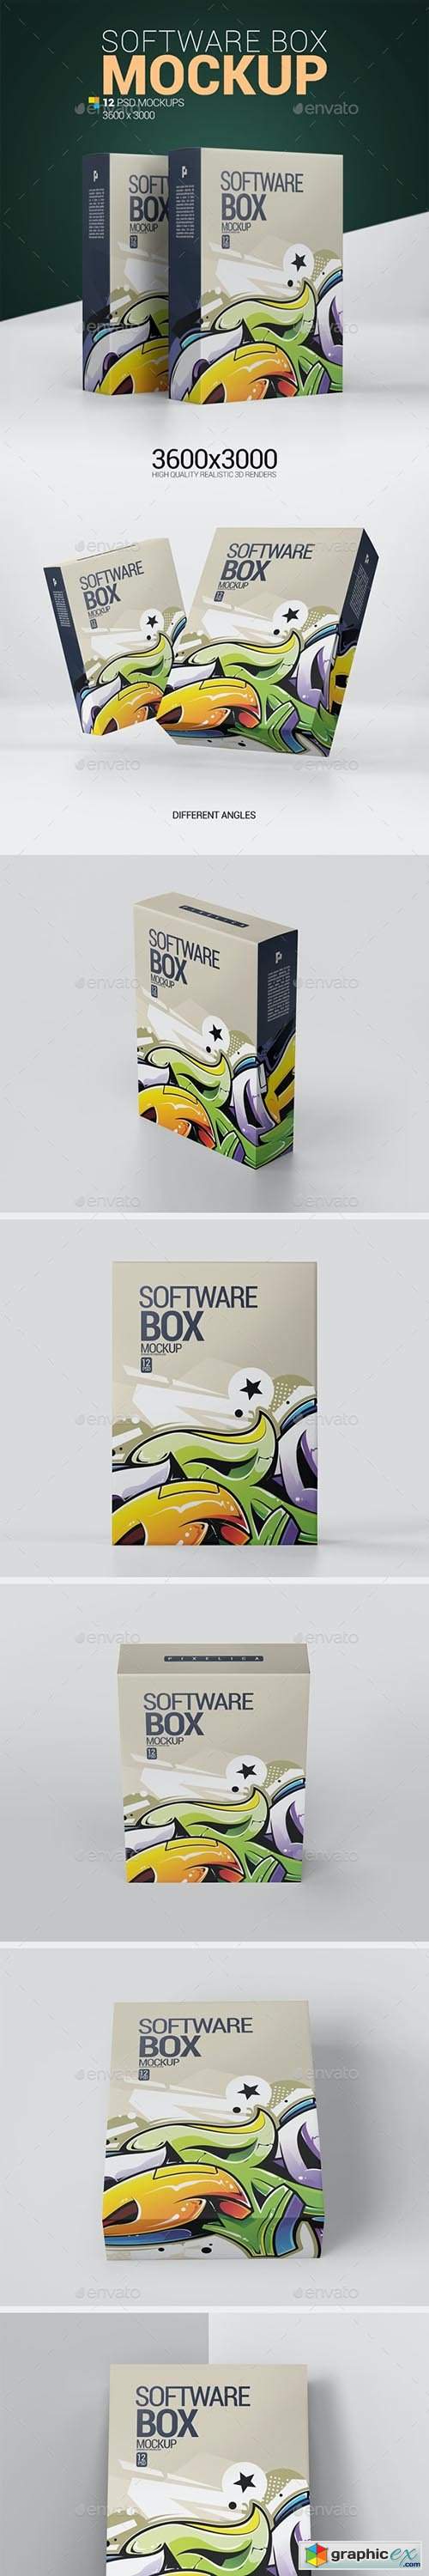 Software Box Mockup 